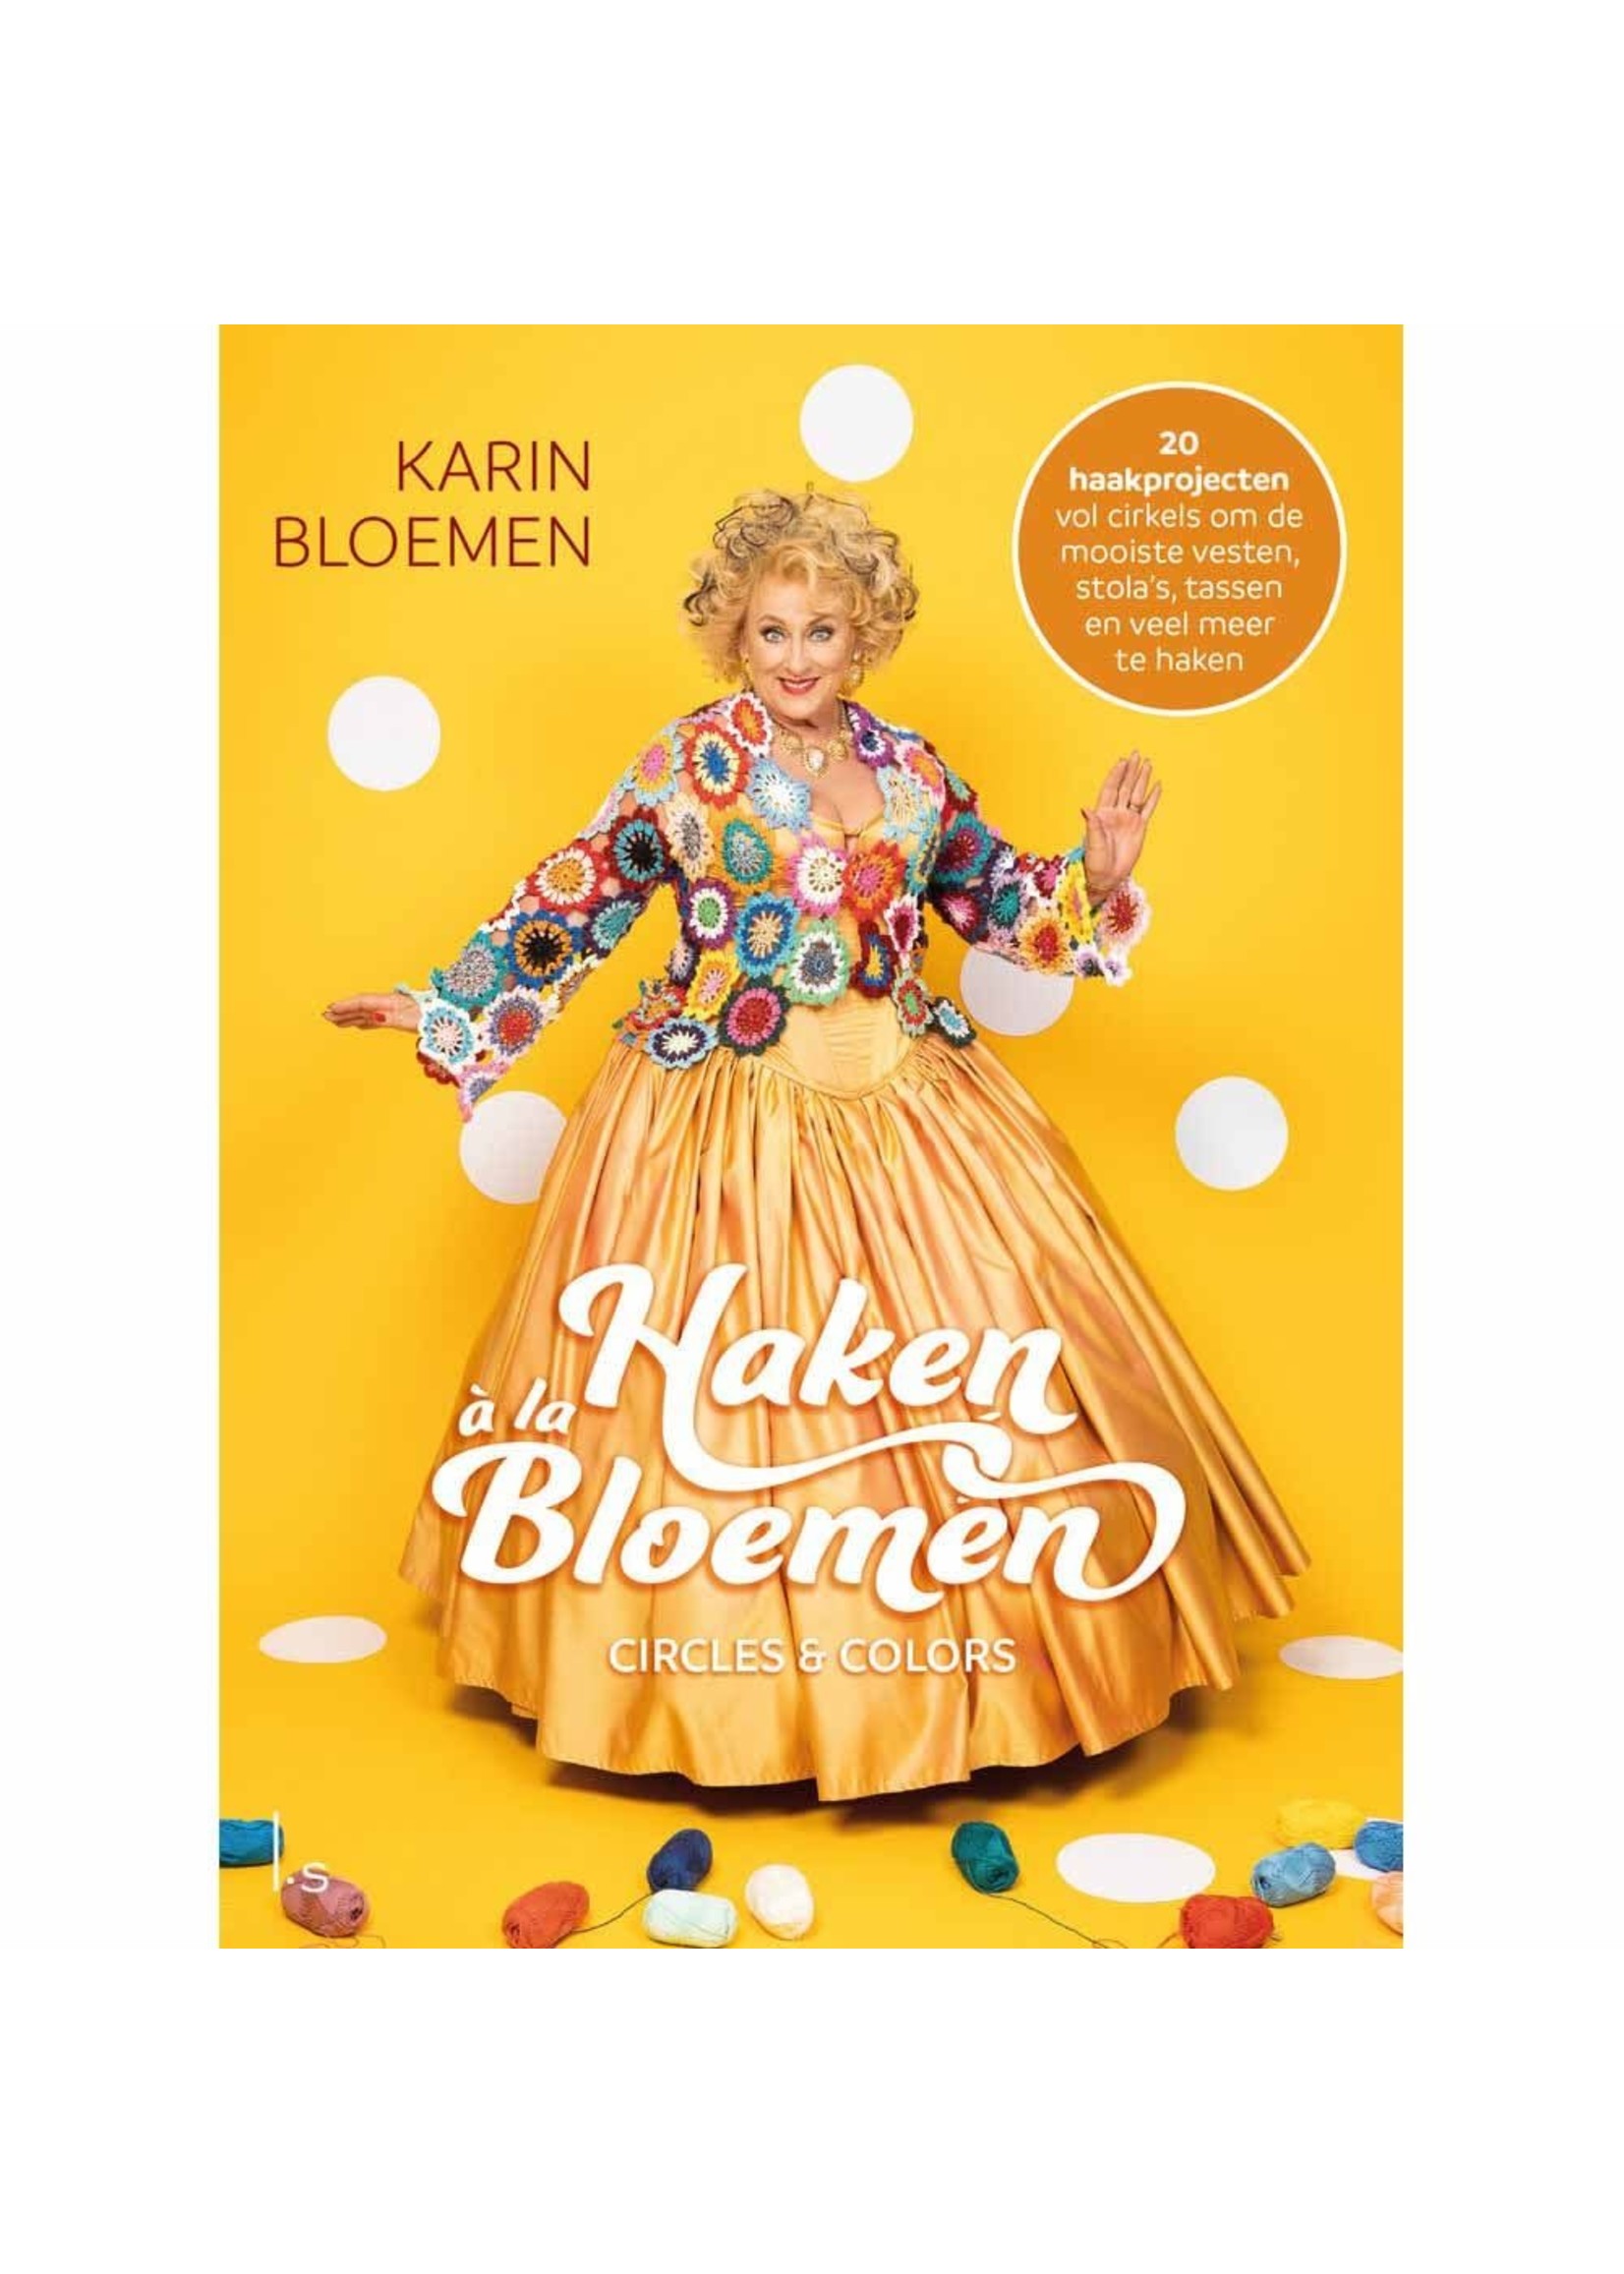 Haken à la Bloemen: Circles & Colors - Karin Bloemen